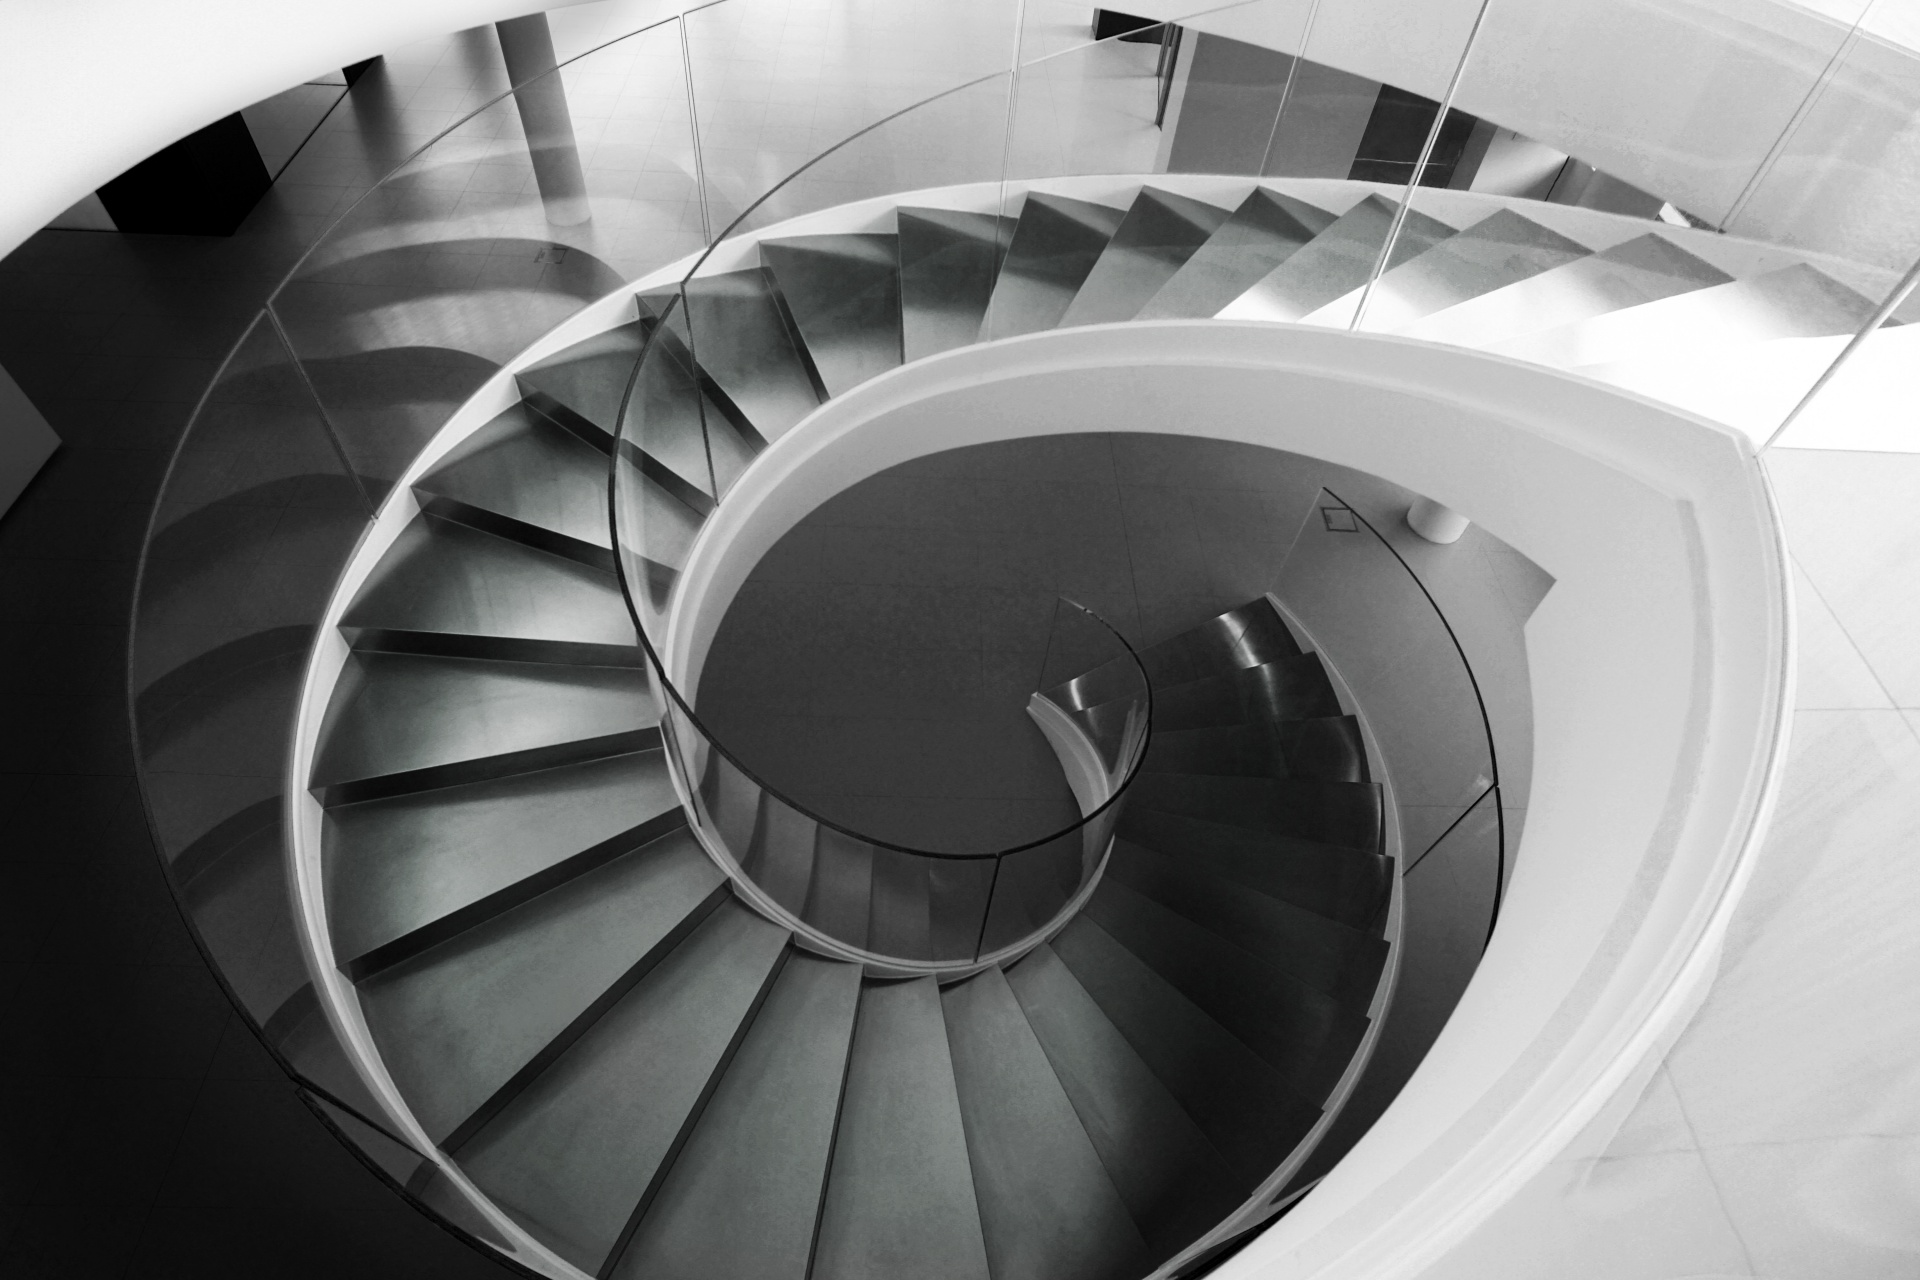 Круглая лестница: Купить винтовую лестницу на второй этаж, металлическая круговая (винтовая) лестница, цена на круглые в Москве